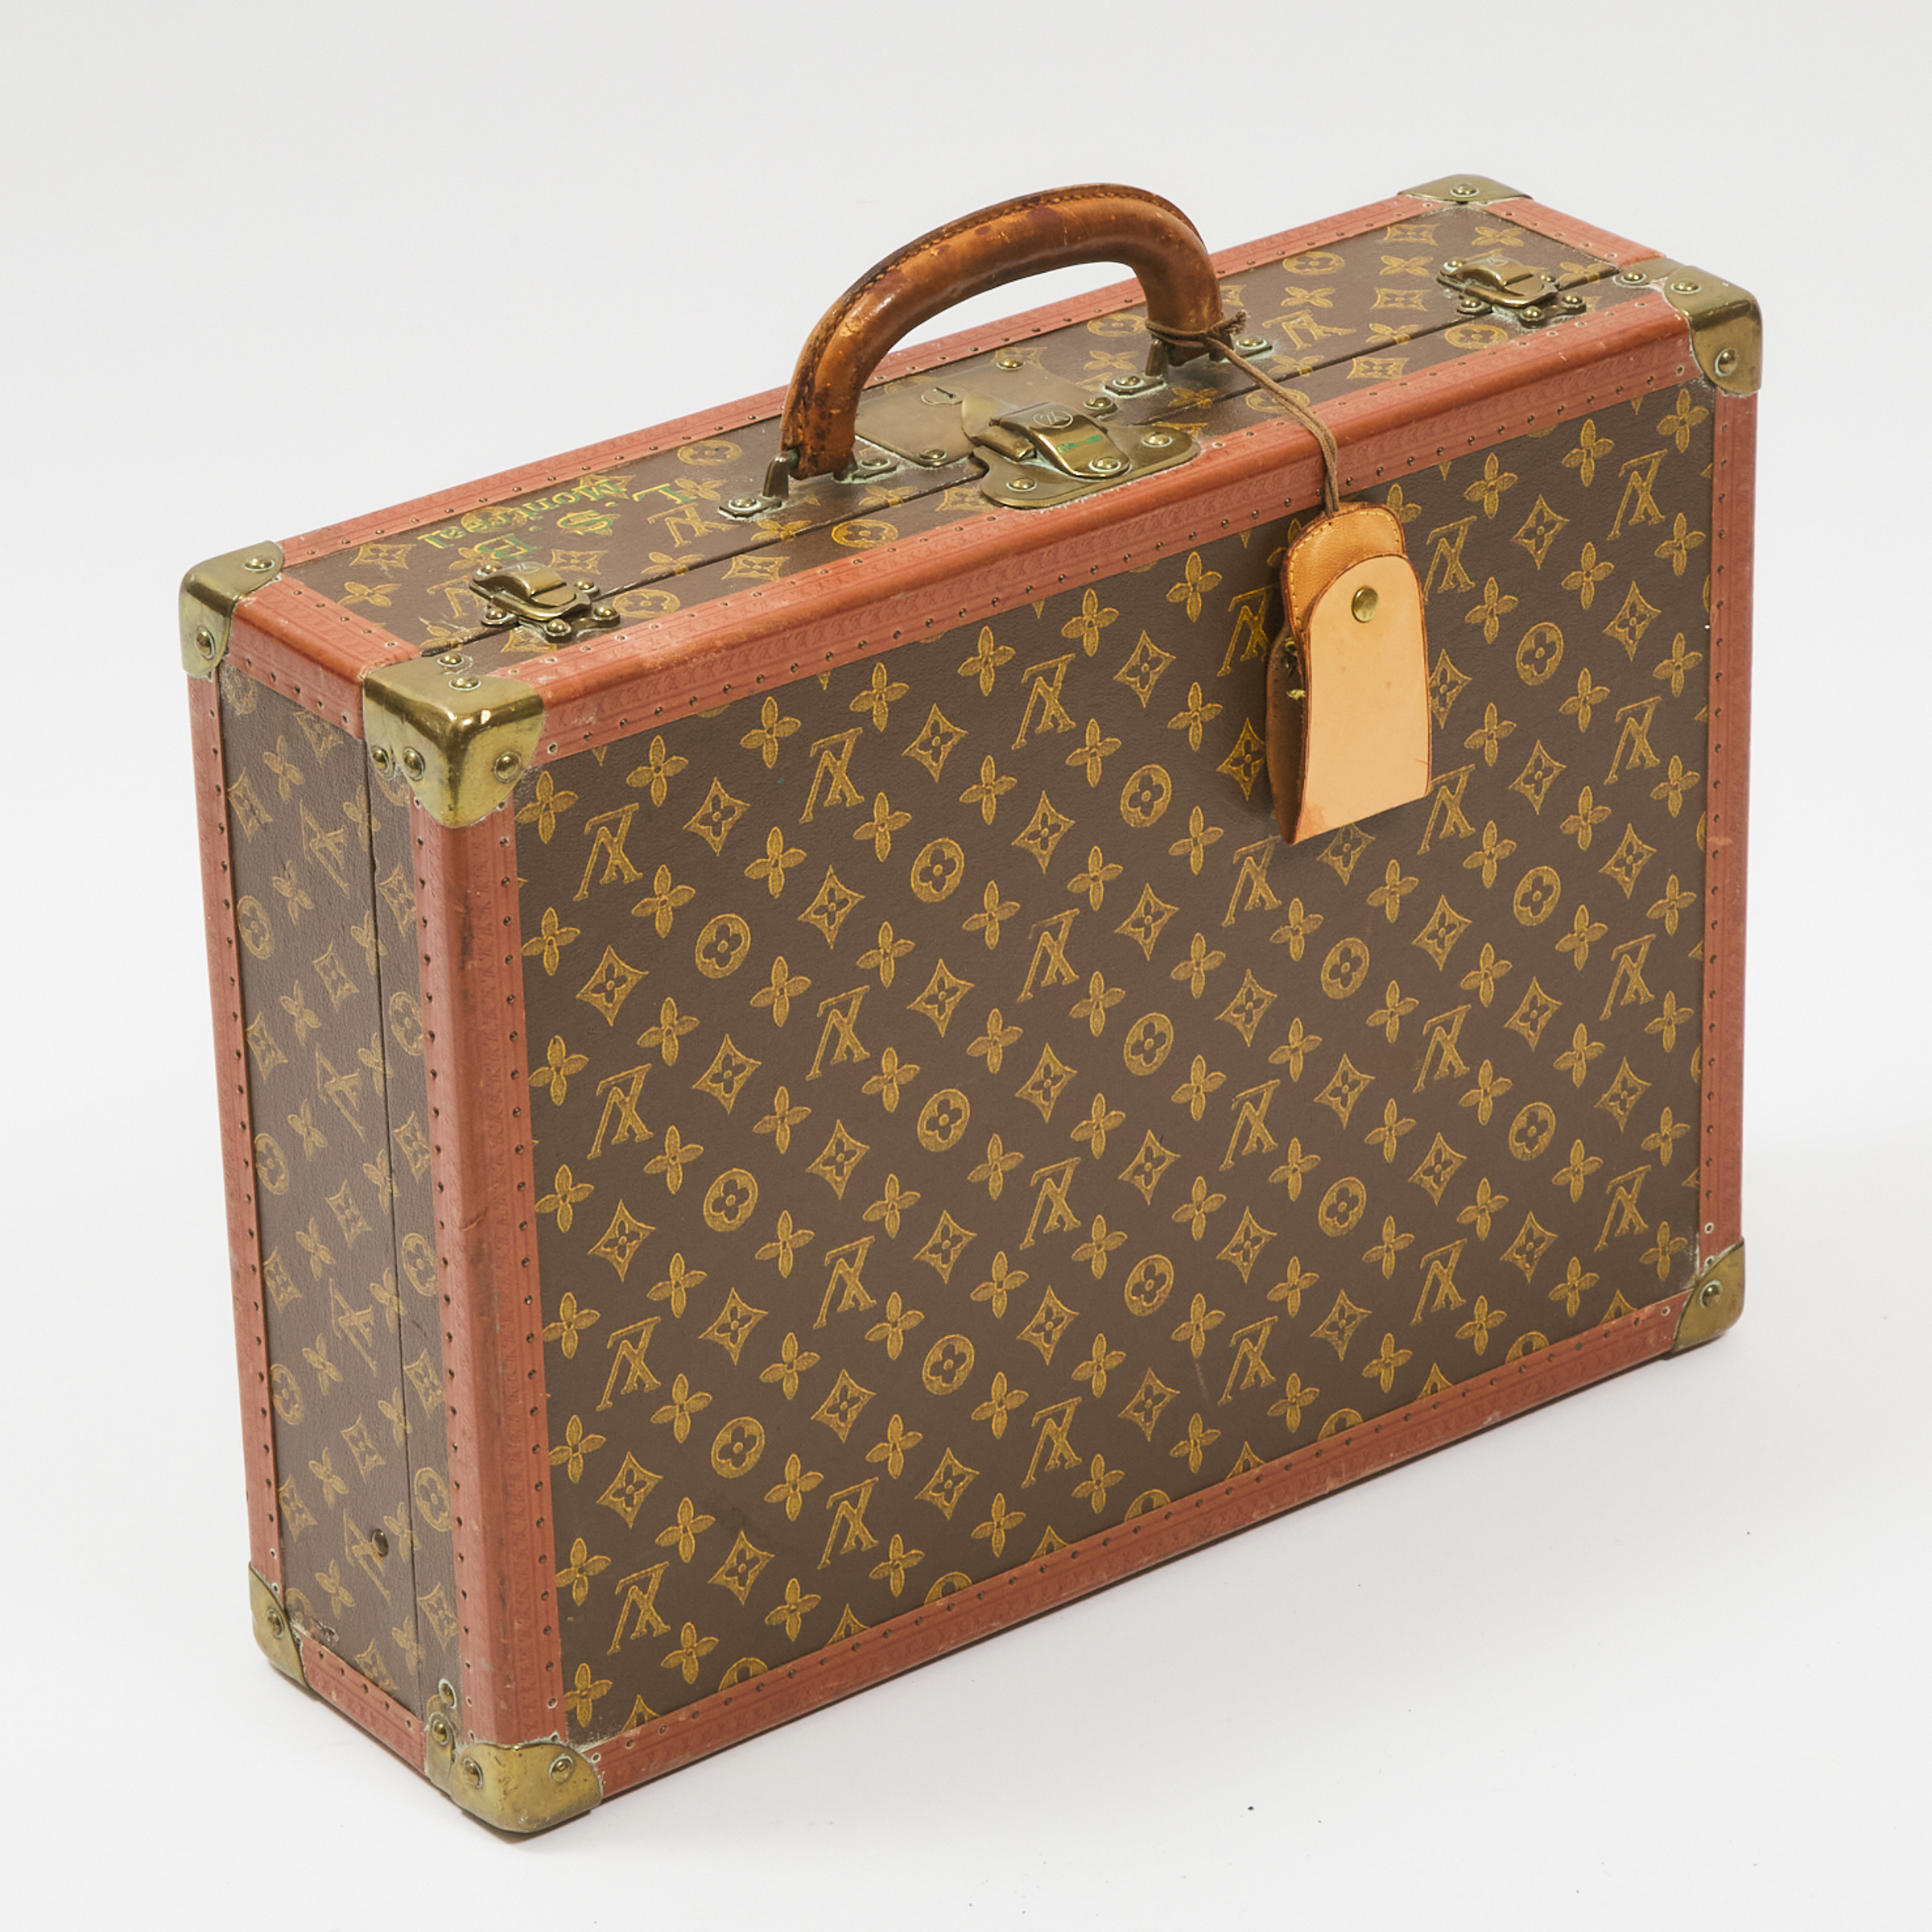 Louis Vuitton 'Bisten 50' Monogram Canvas Hard Sided Suitcase, mid 20th century